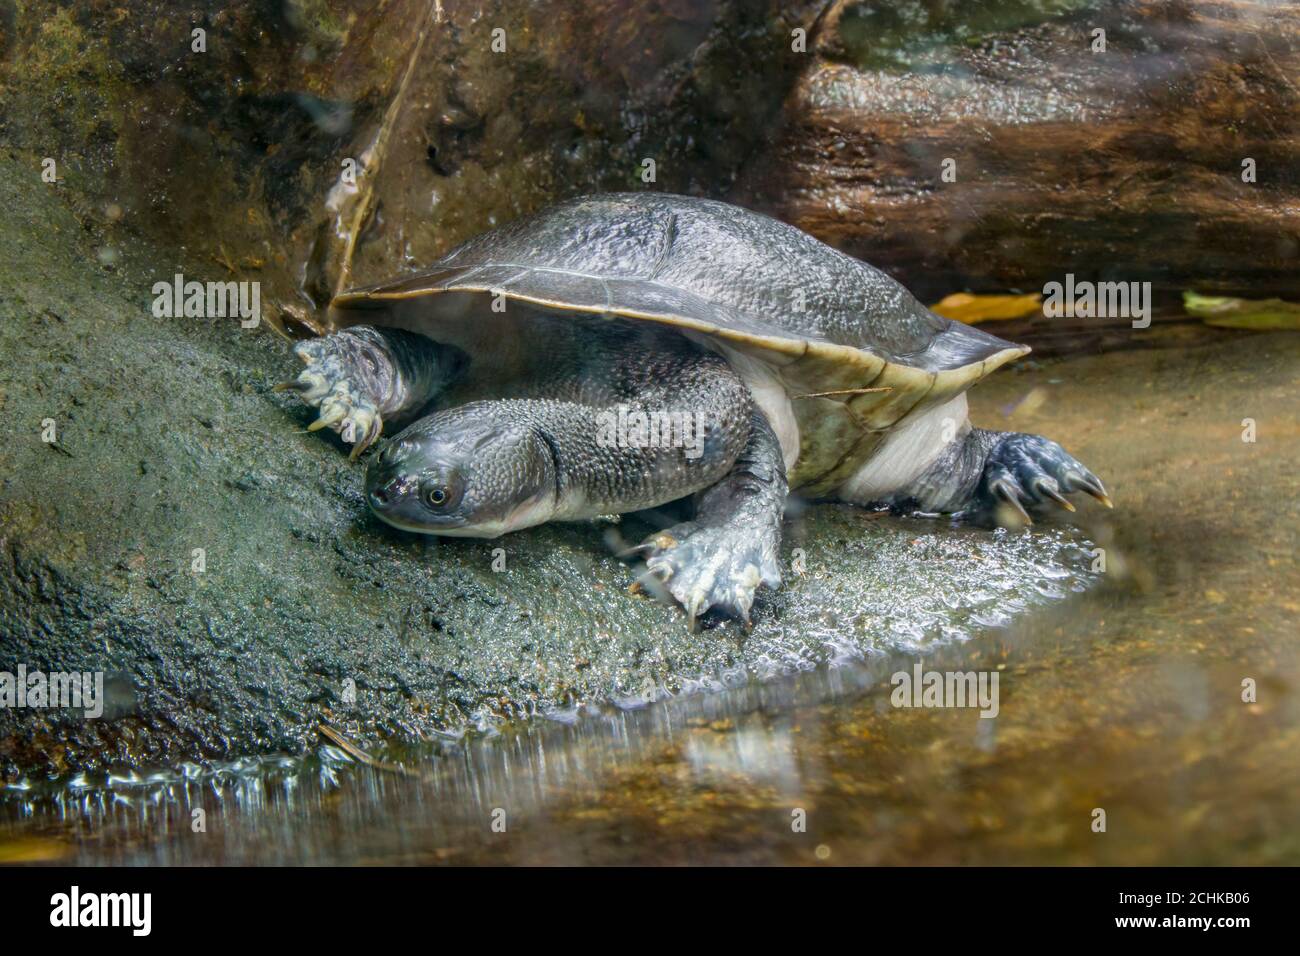 La tortue à col de serpent de l'île Roti (Chelodina mccordi ) est une espèce de tortue en danger critique d'extinction de l'île Rote en Indonésie. Banque D'Images